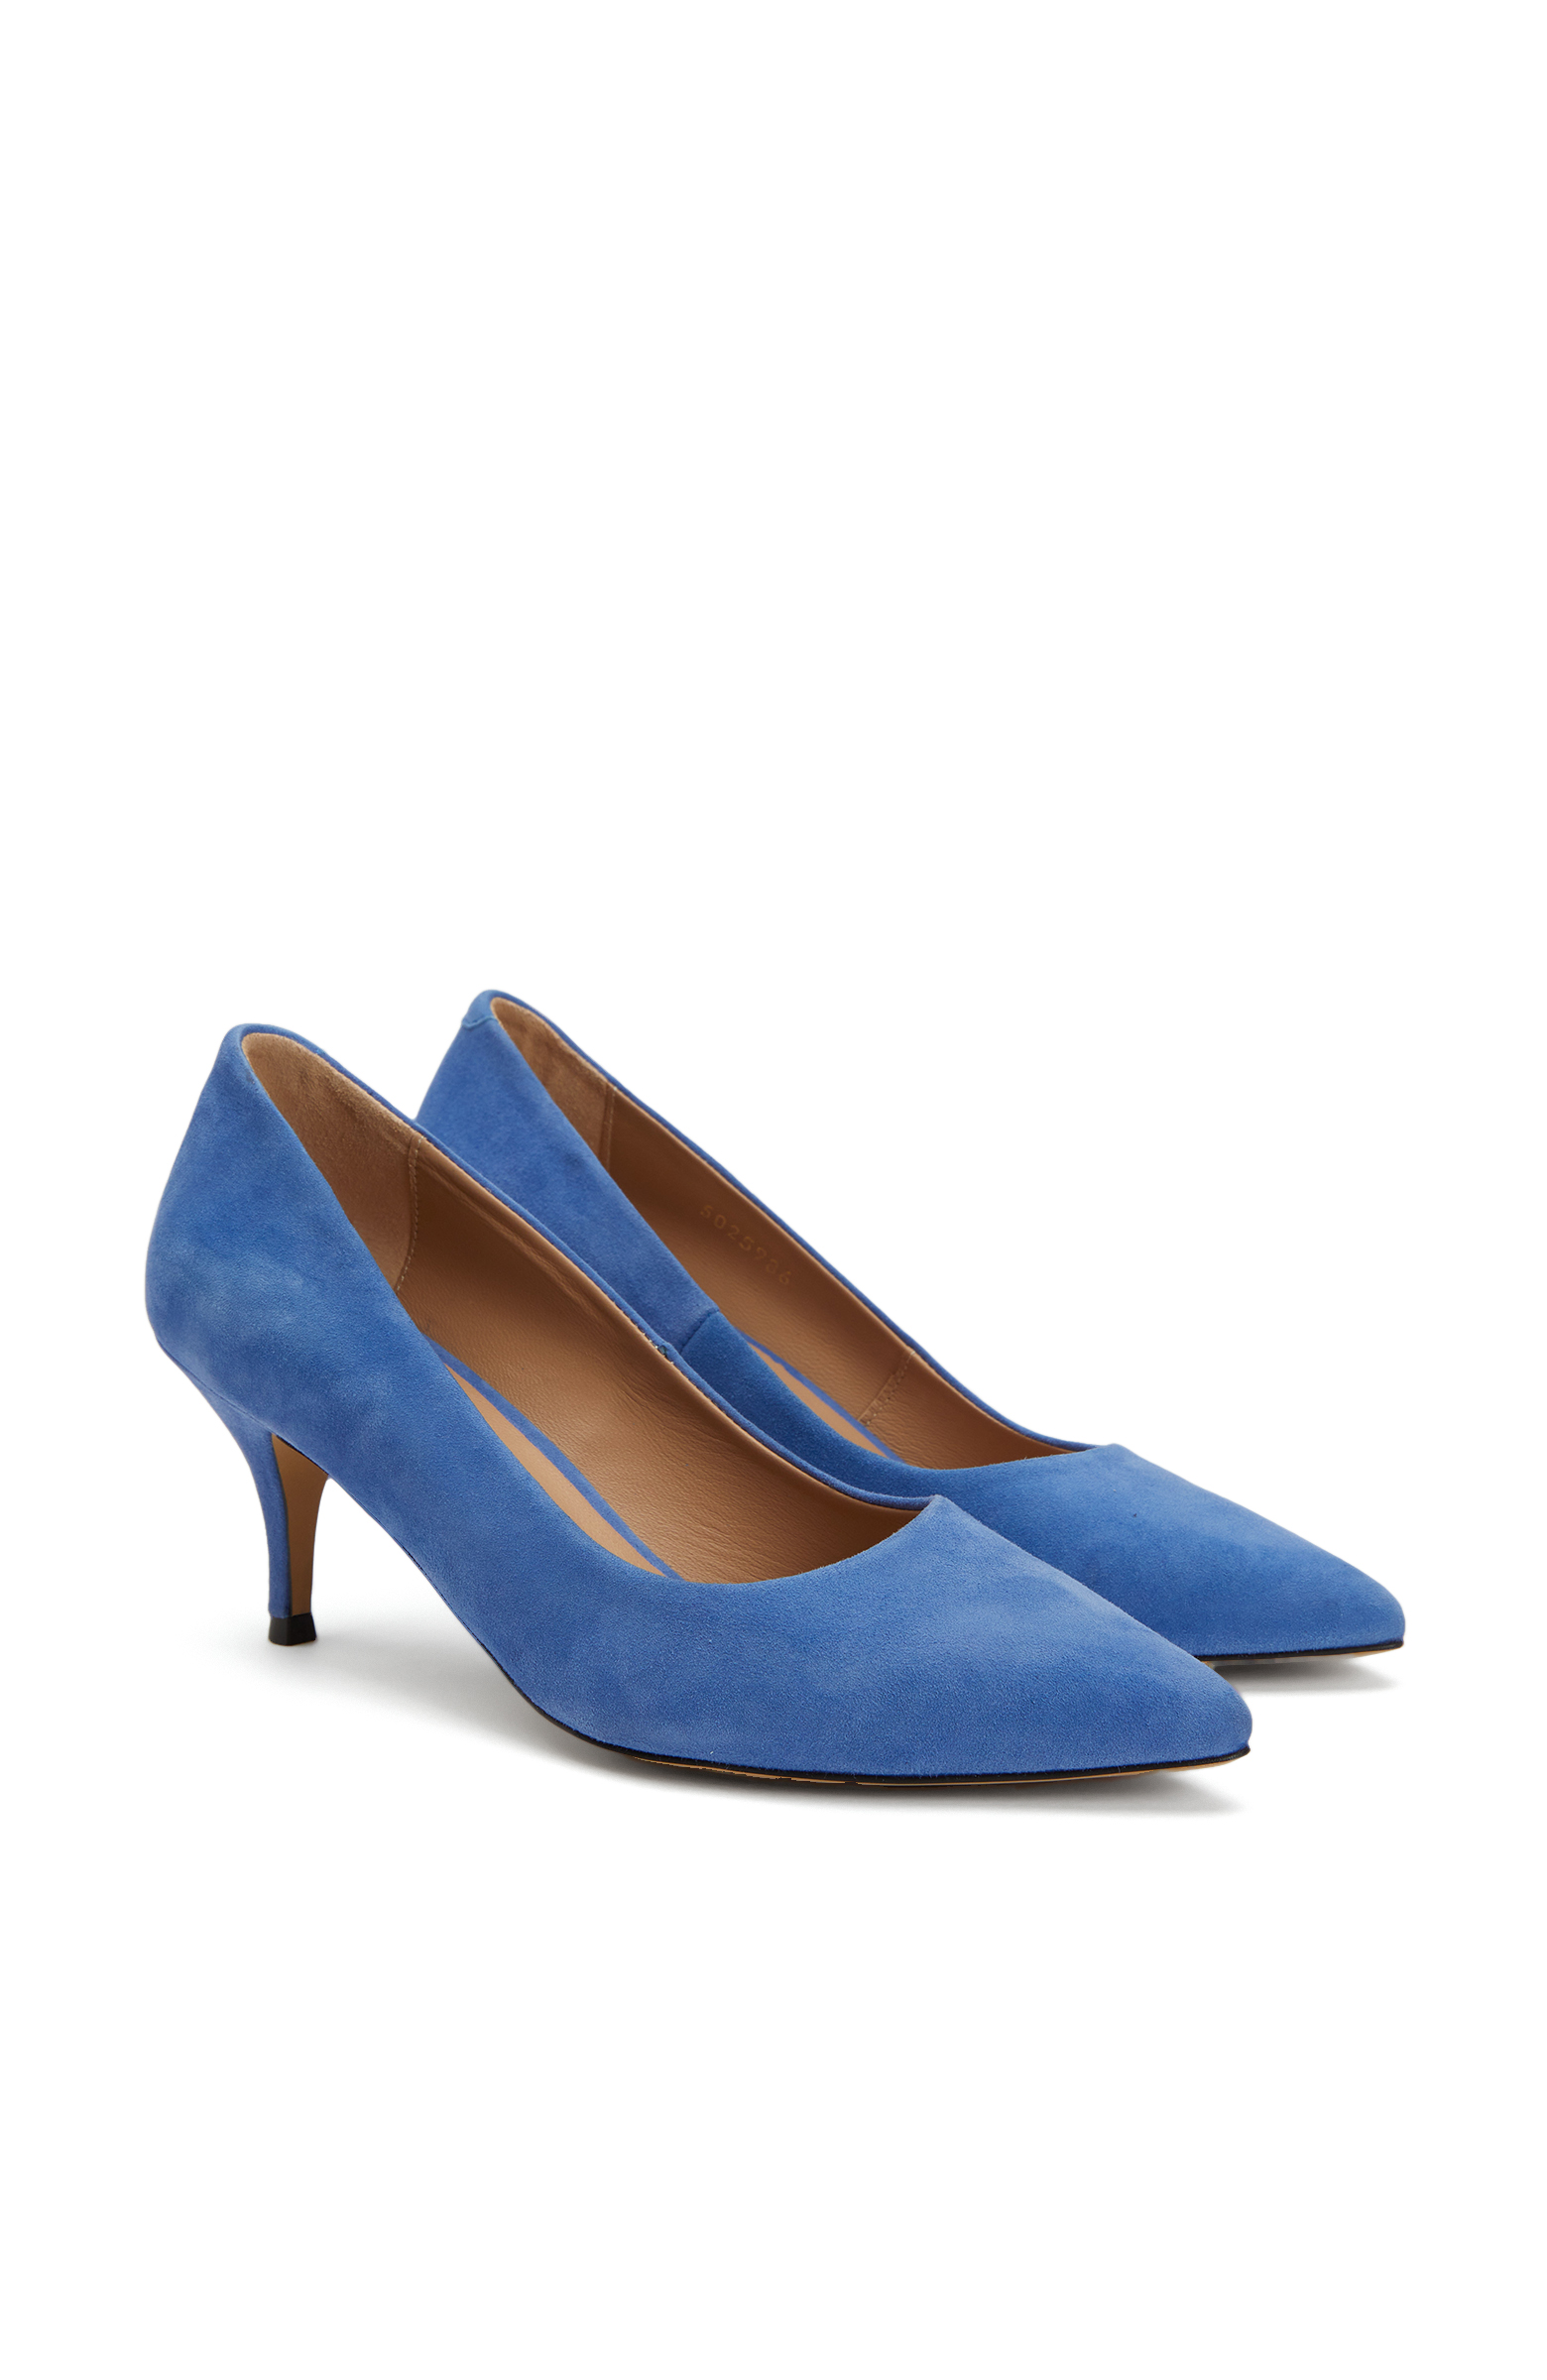 Mavi Süet Topuklu Ayakkabı -2